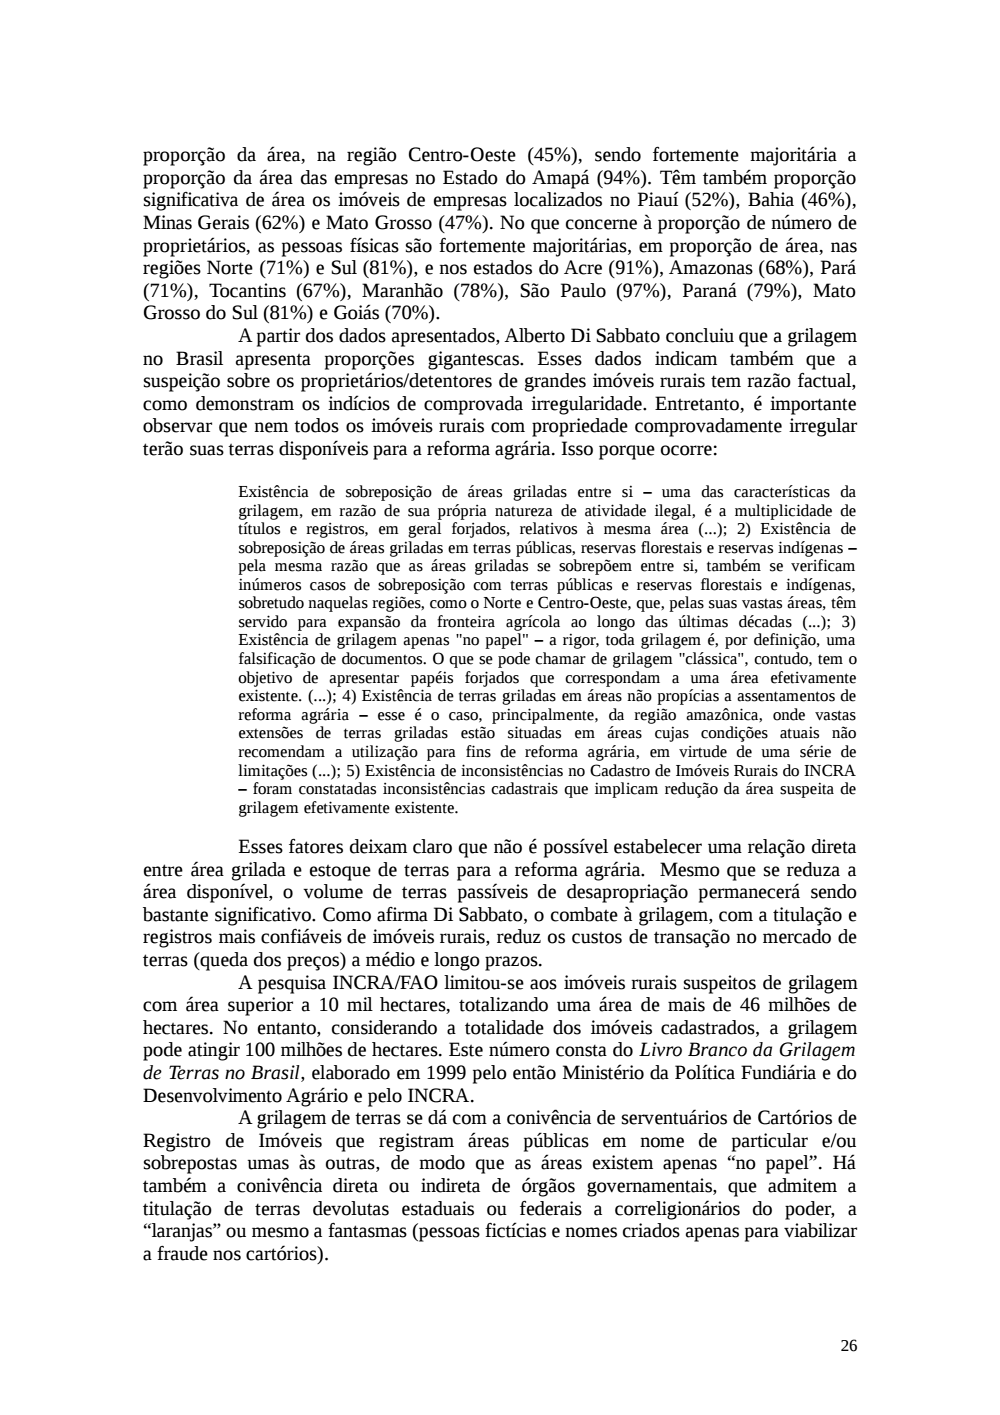 Page 26 from Relatório final da comissão